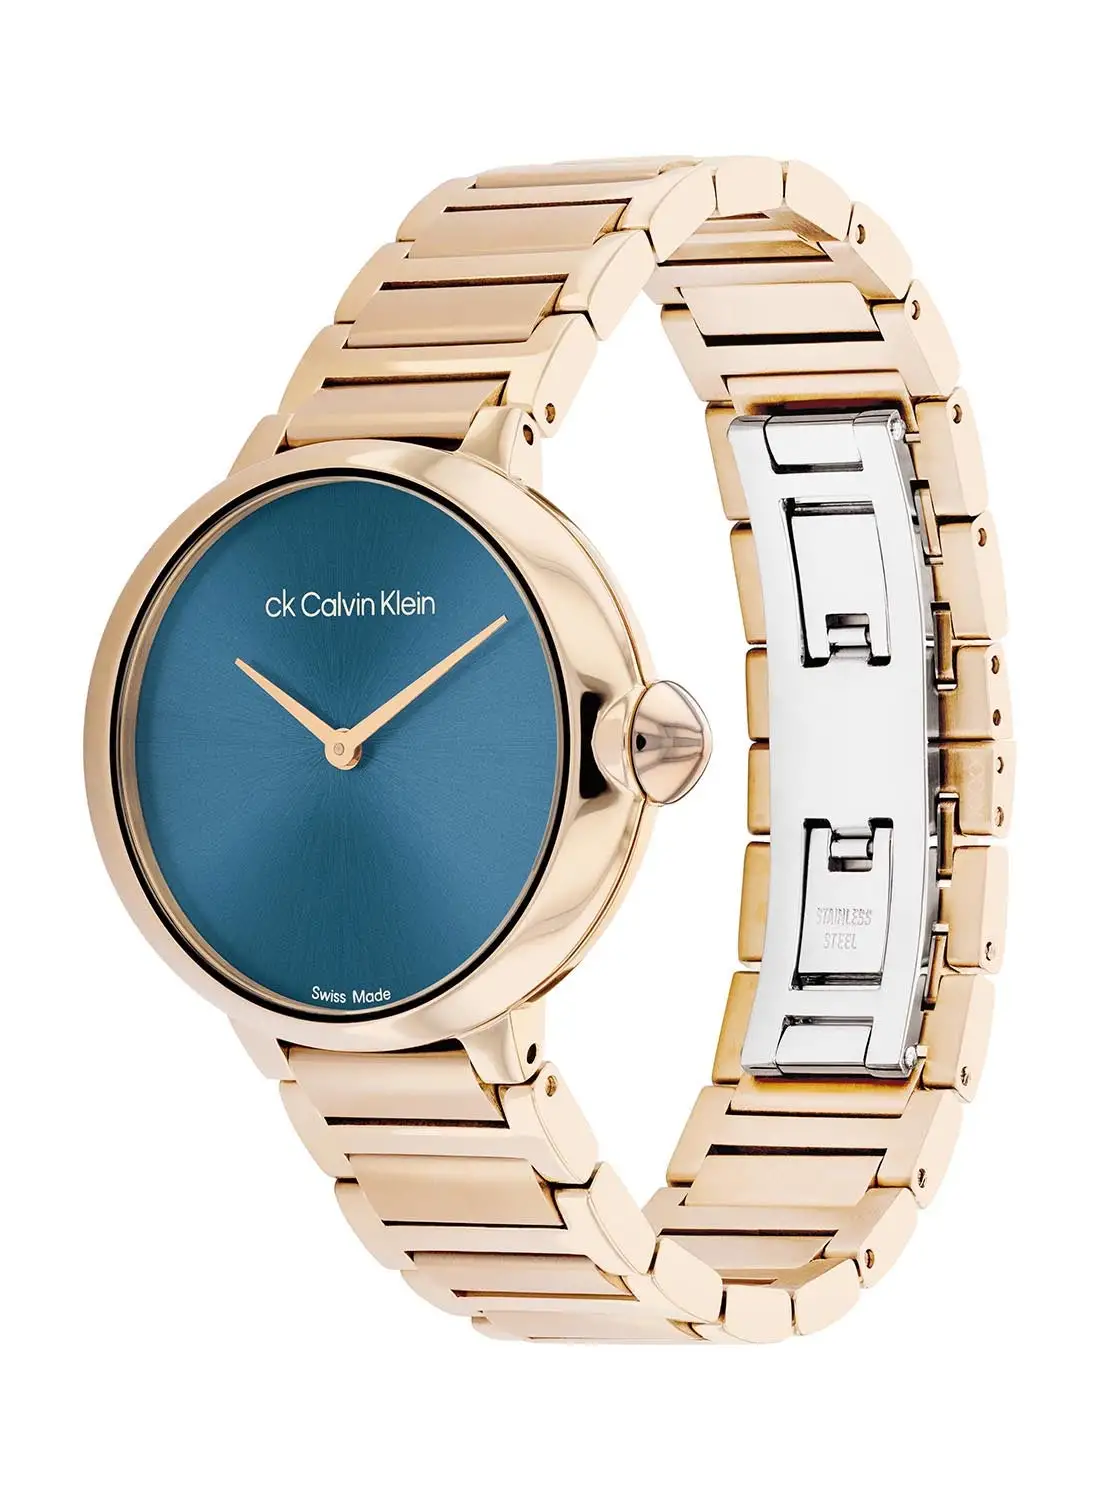 CALVIN KLEIN Women's Analog Round Shape Stainless Steel Wrist Watch 25000048 - 36.5 Mm